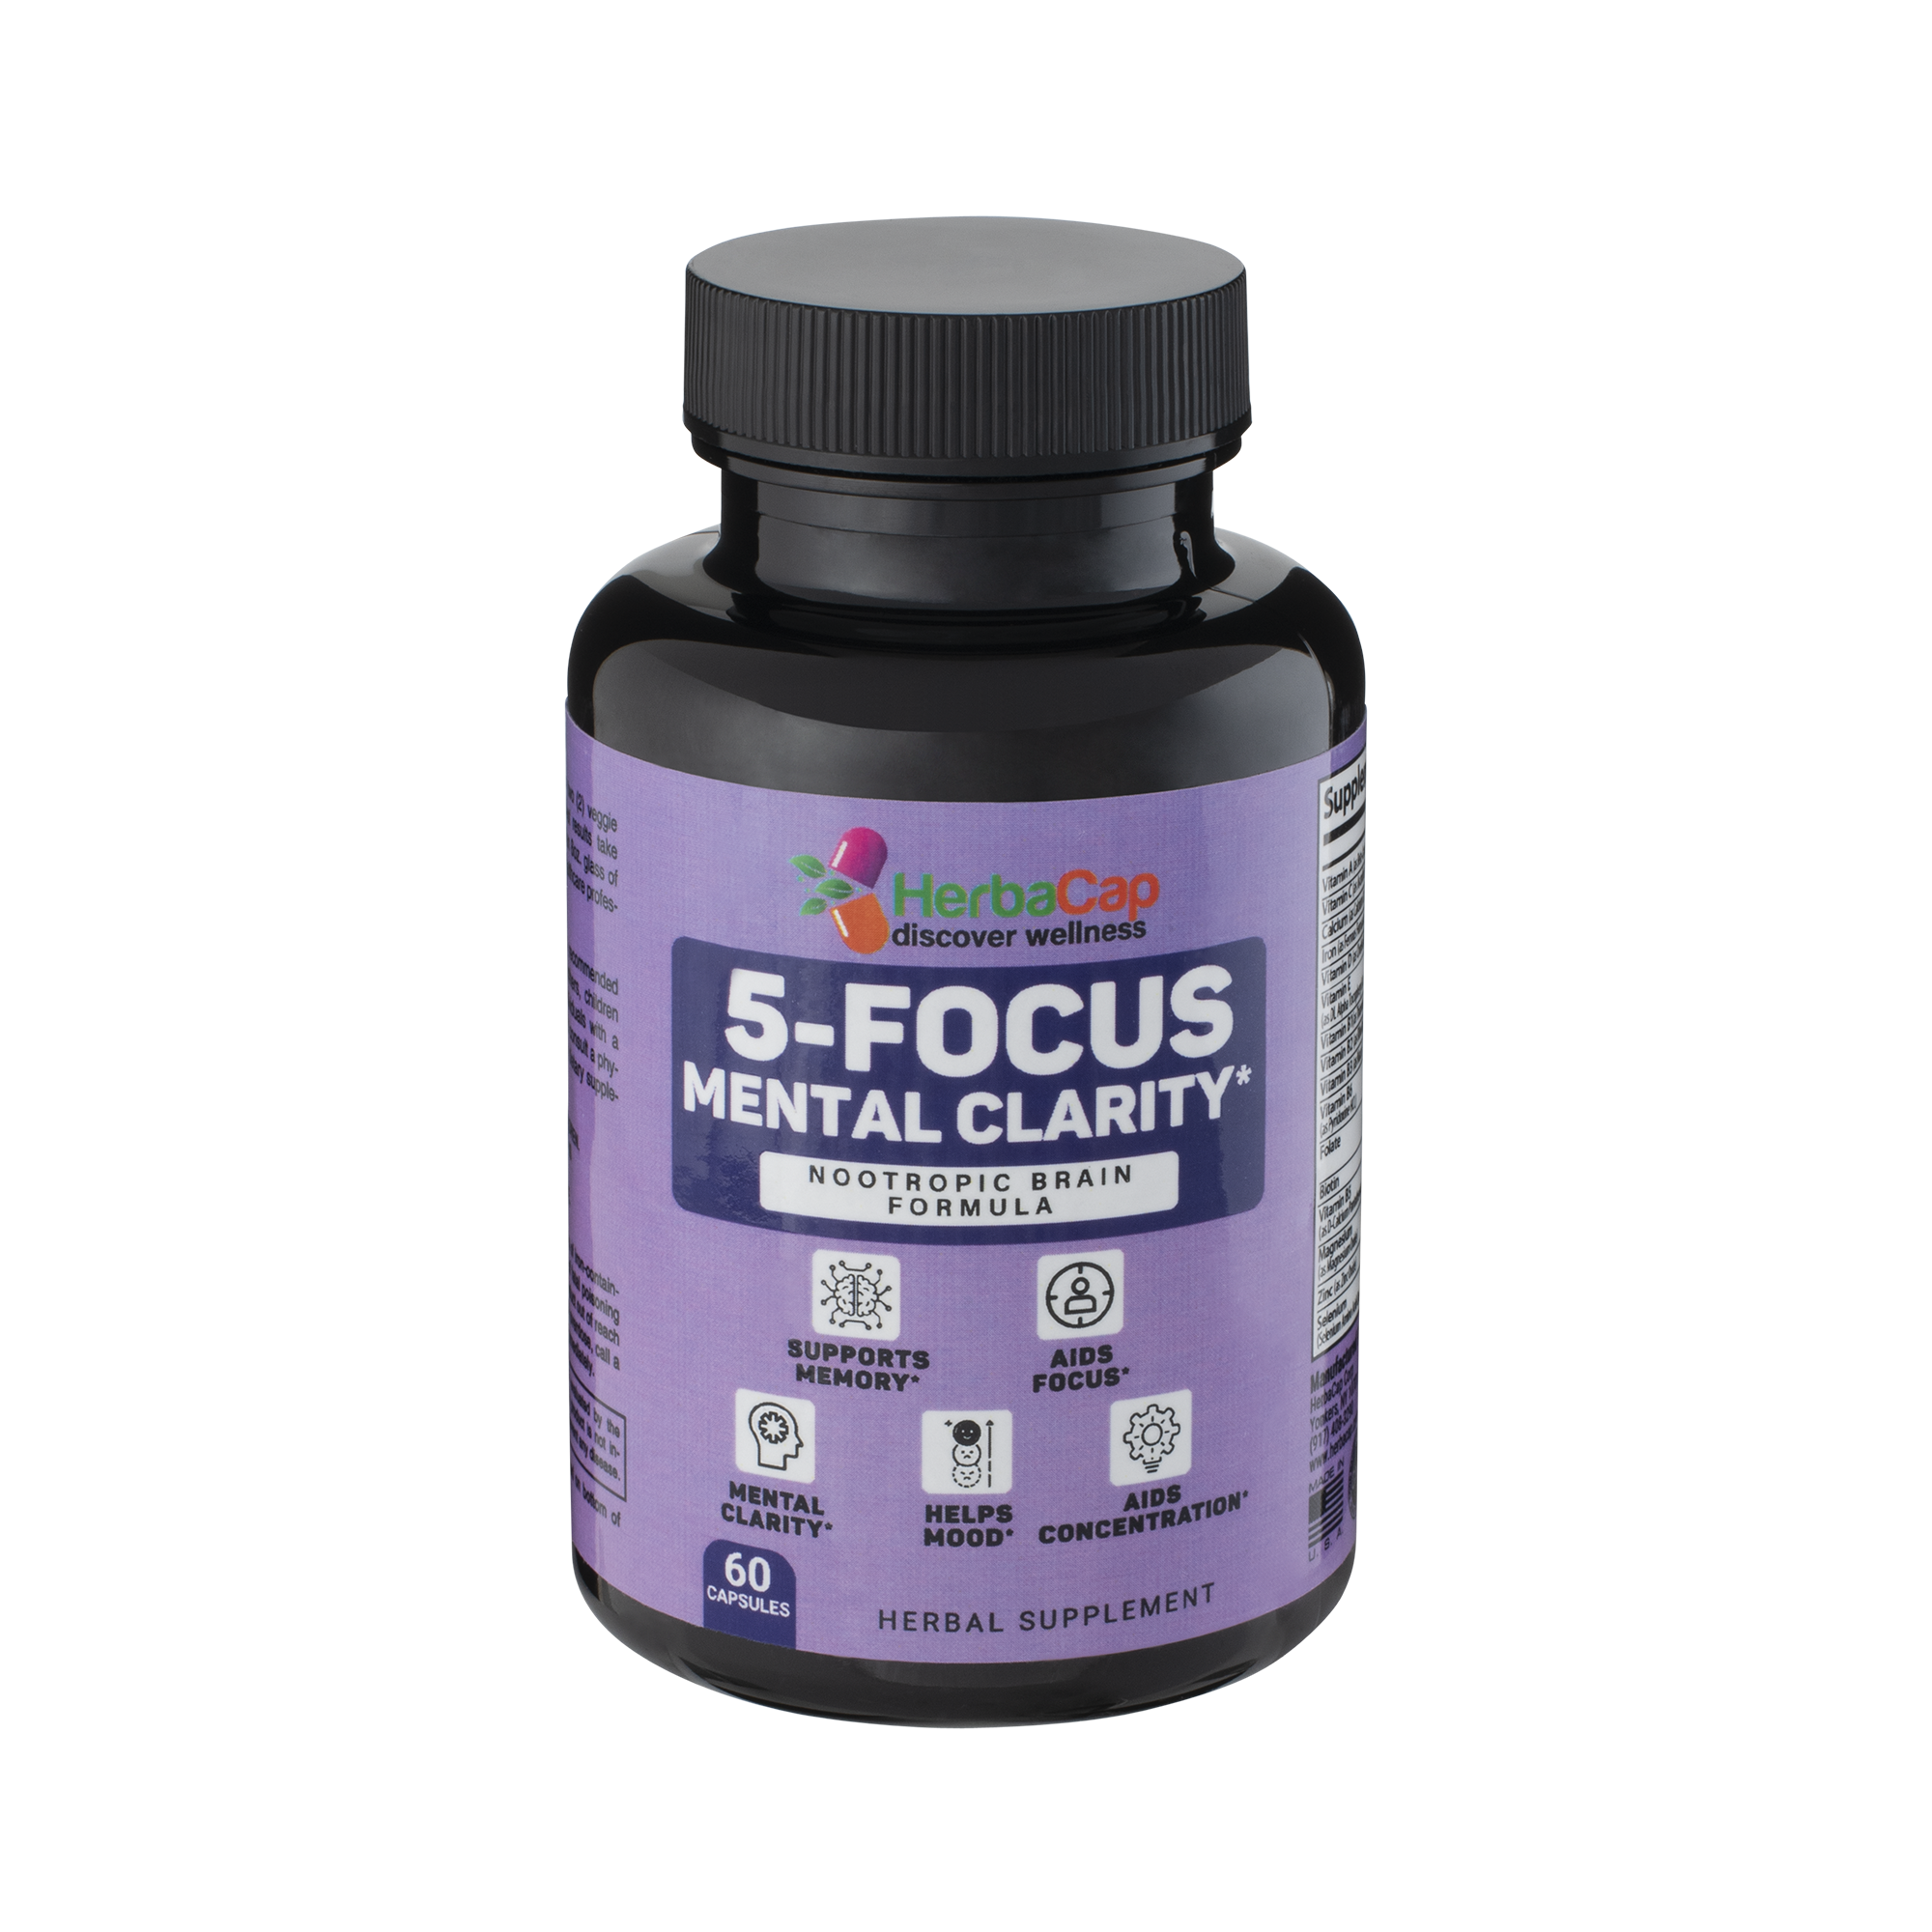 5-Focus Mental Clarity